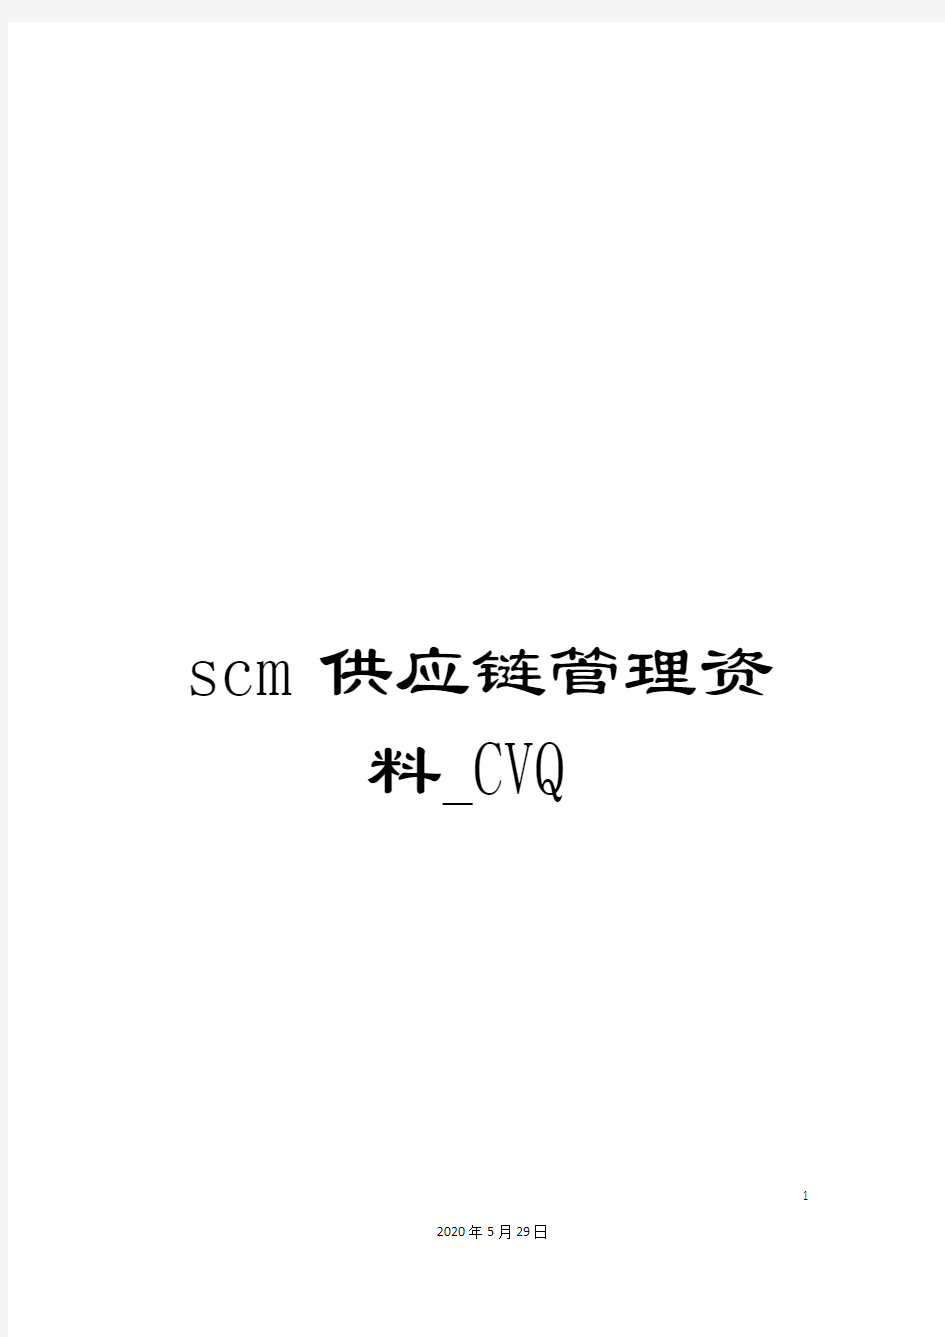 scm供应链管理资料_CVQ